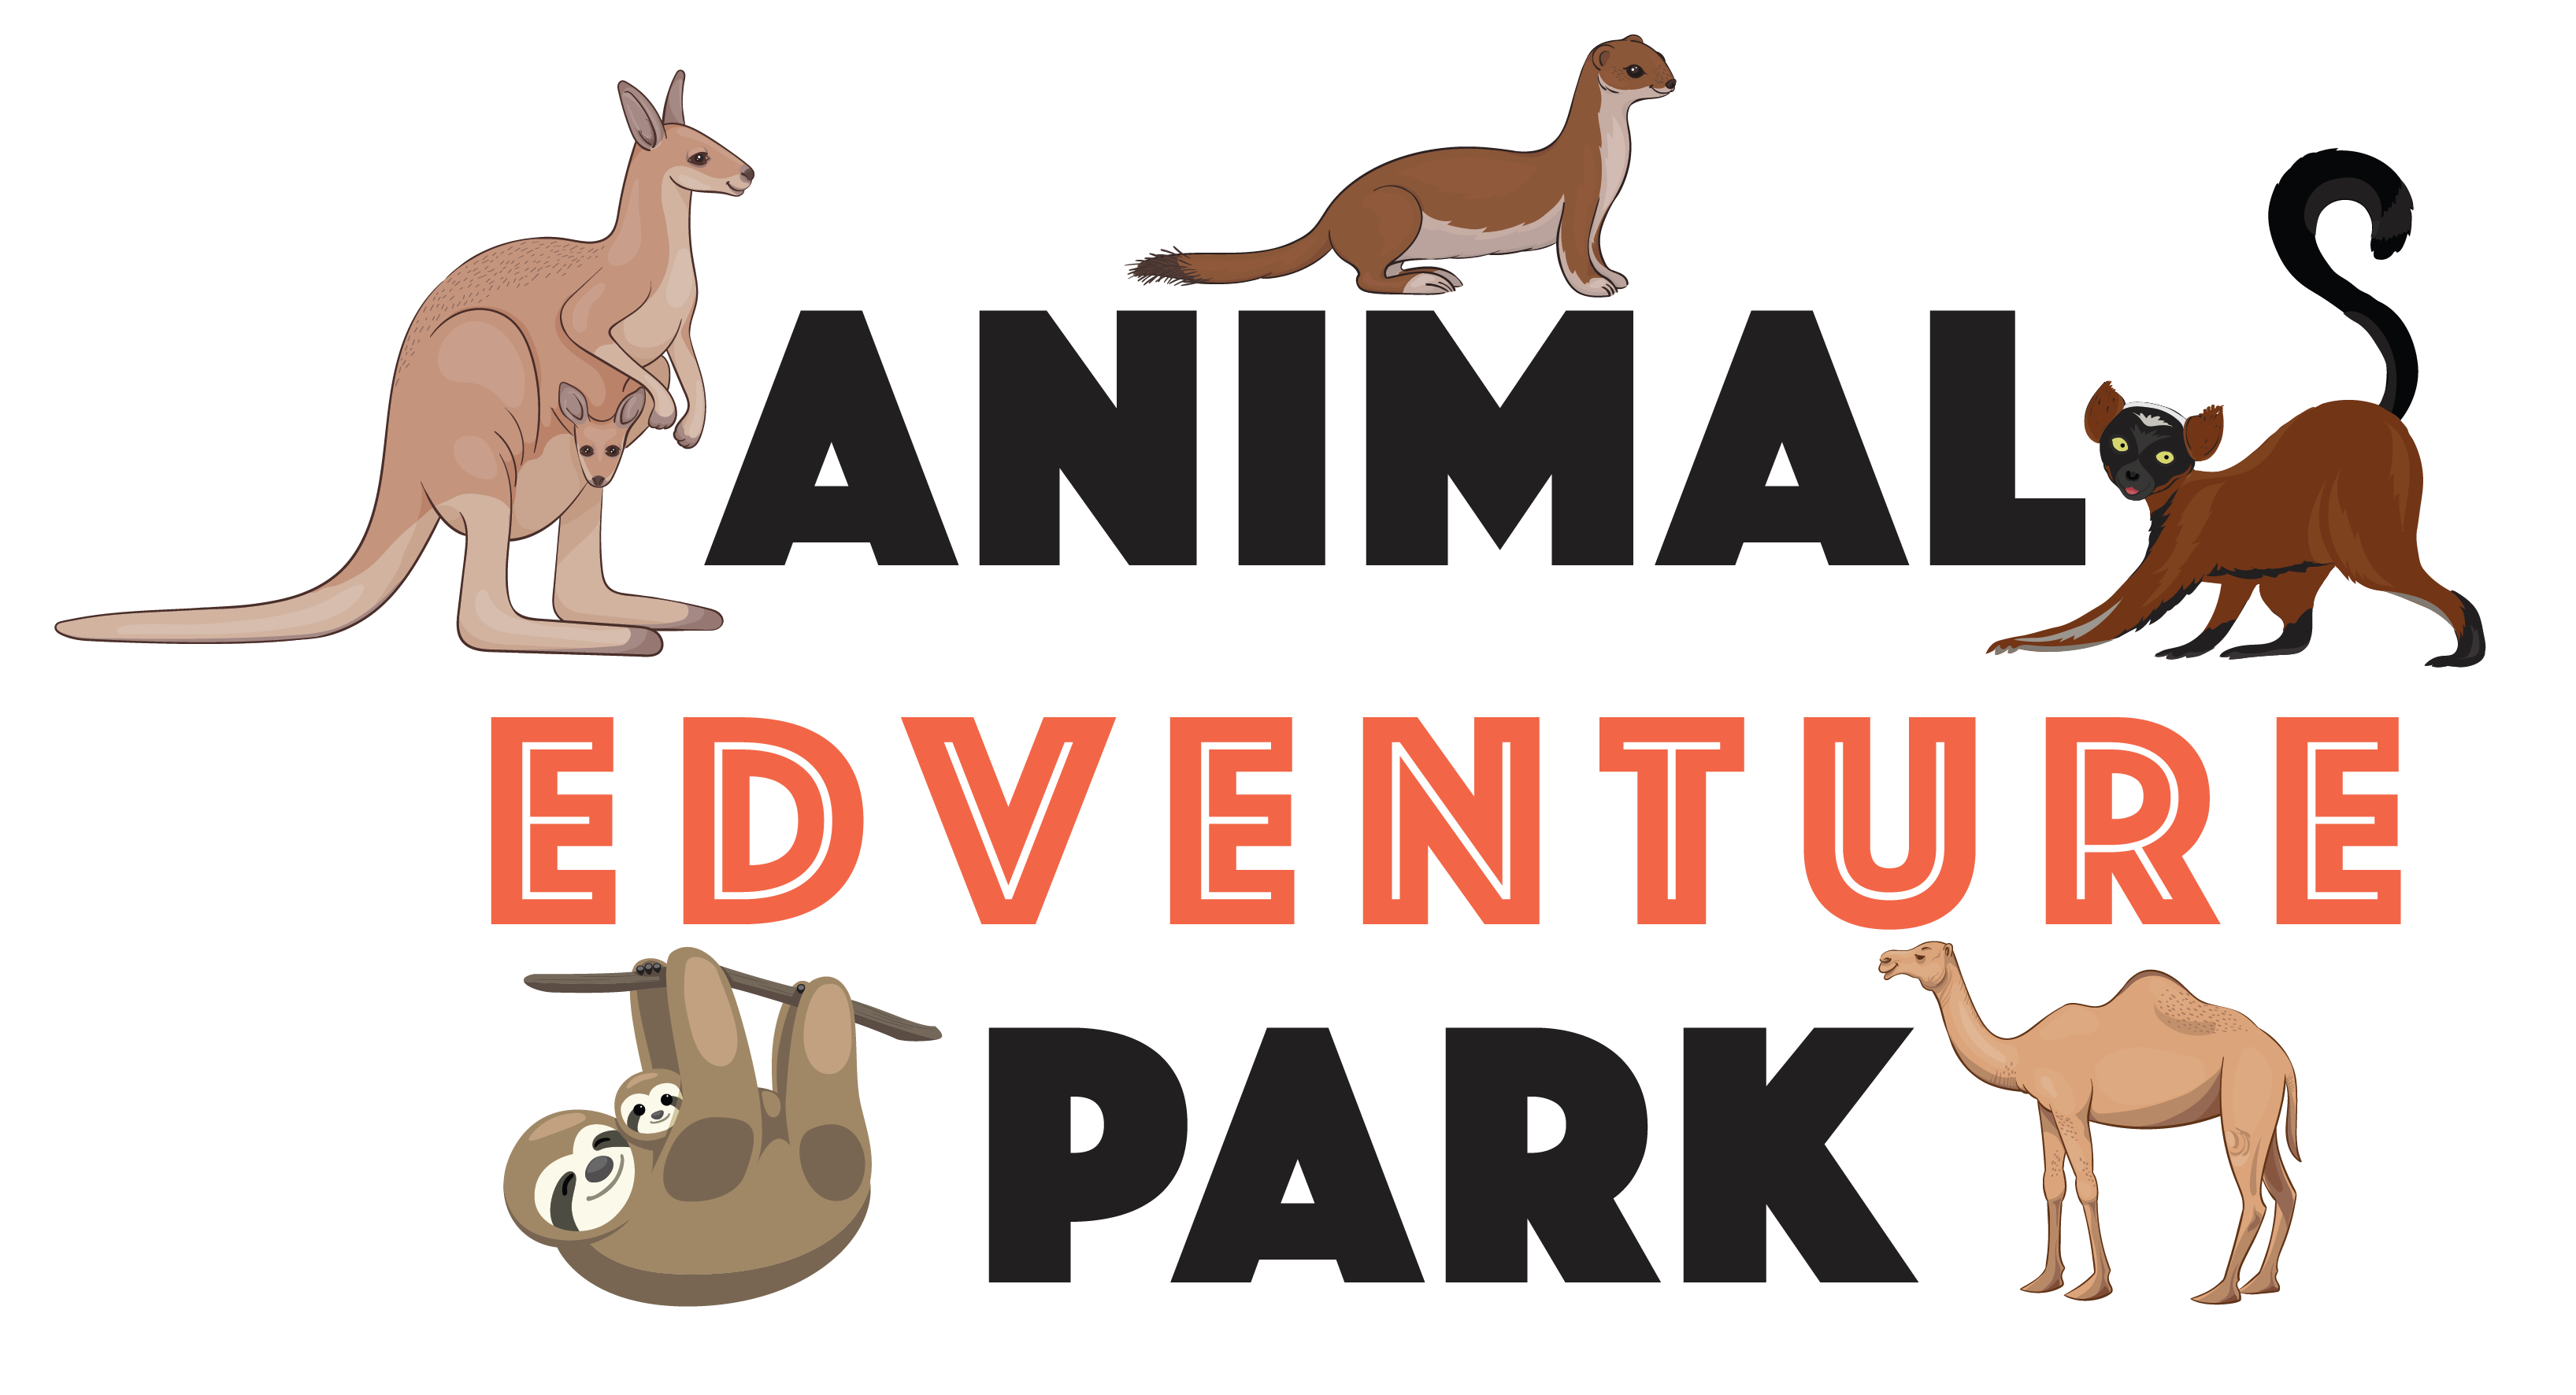 animal edventures park & safari